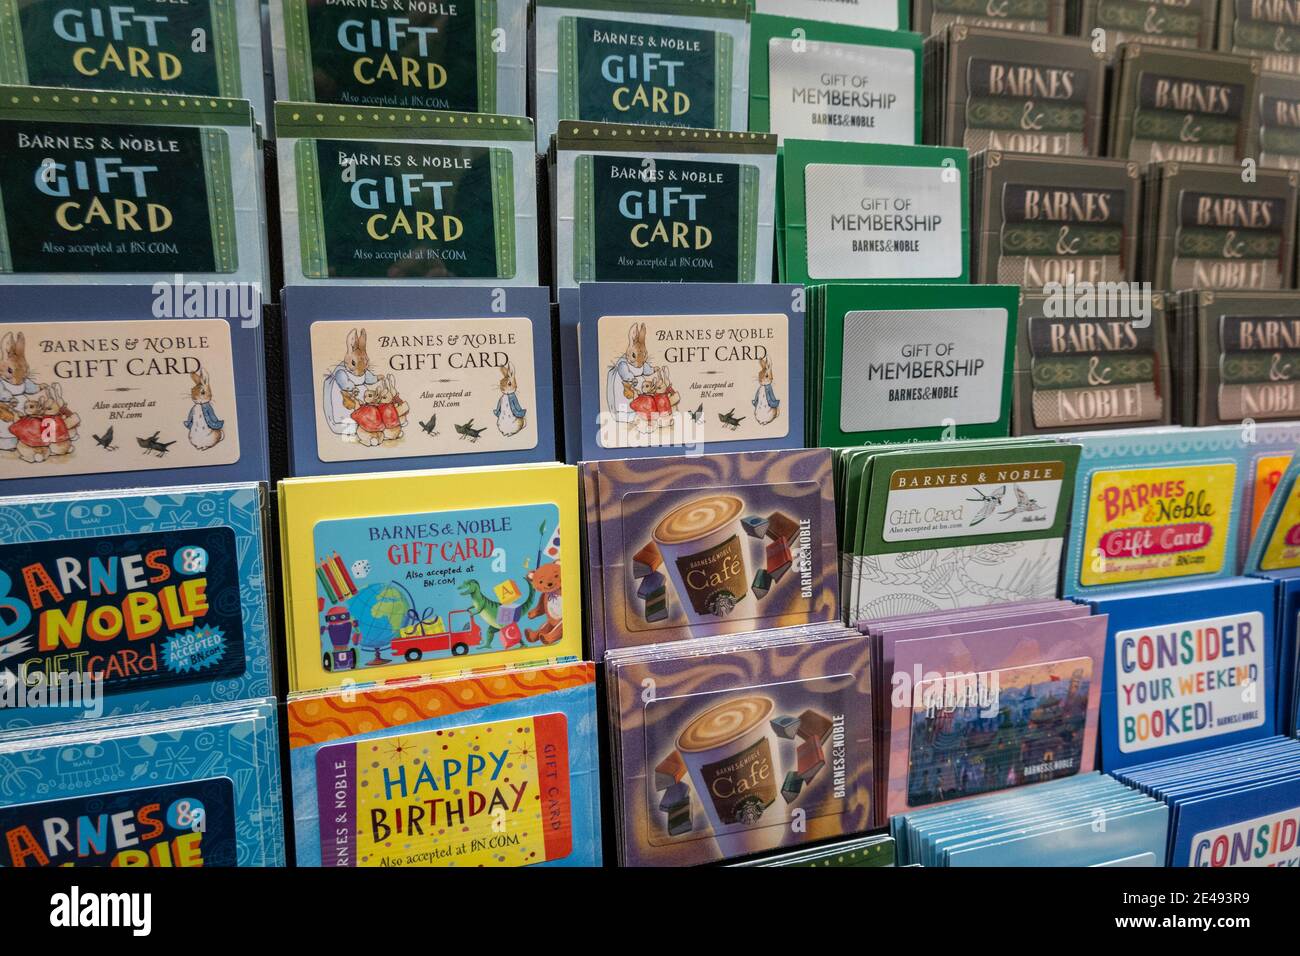 Affichage de cartes-cadeaux prépayées à Barnes & Noble à New York, États-Unis Banque D'Images